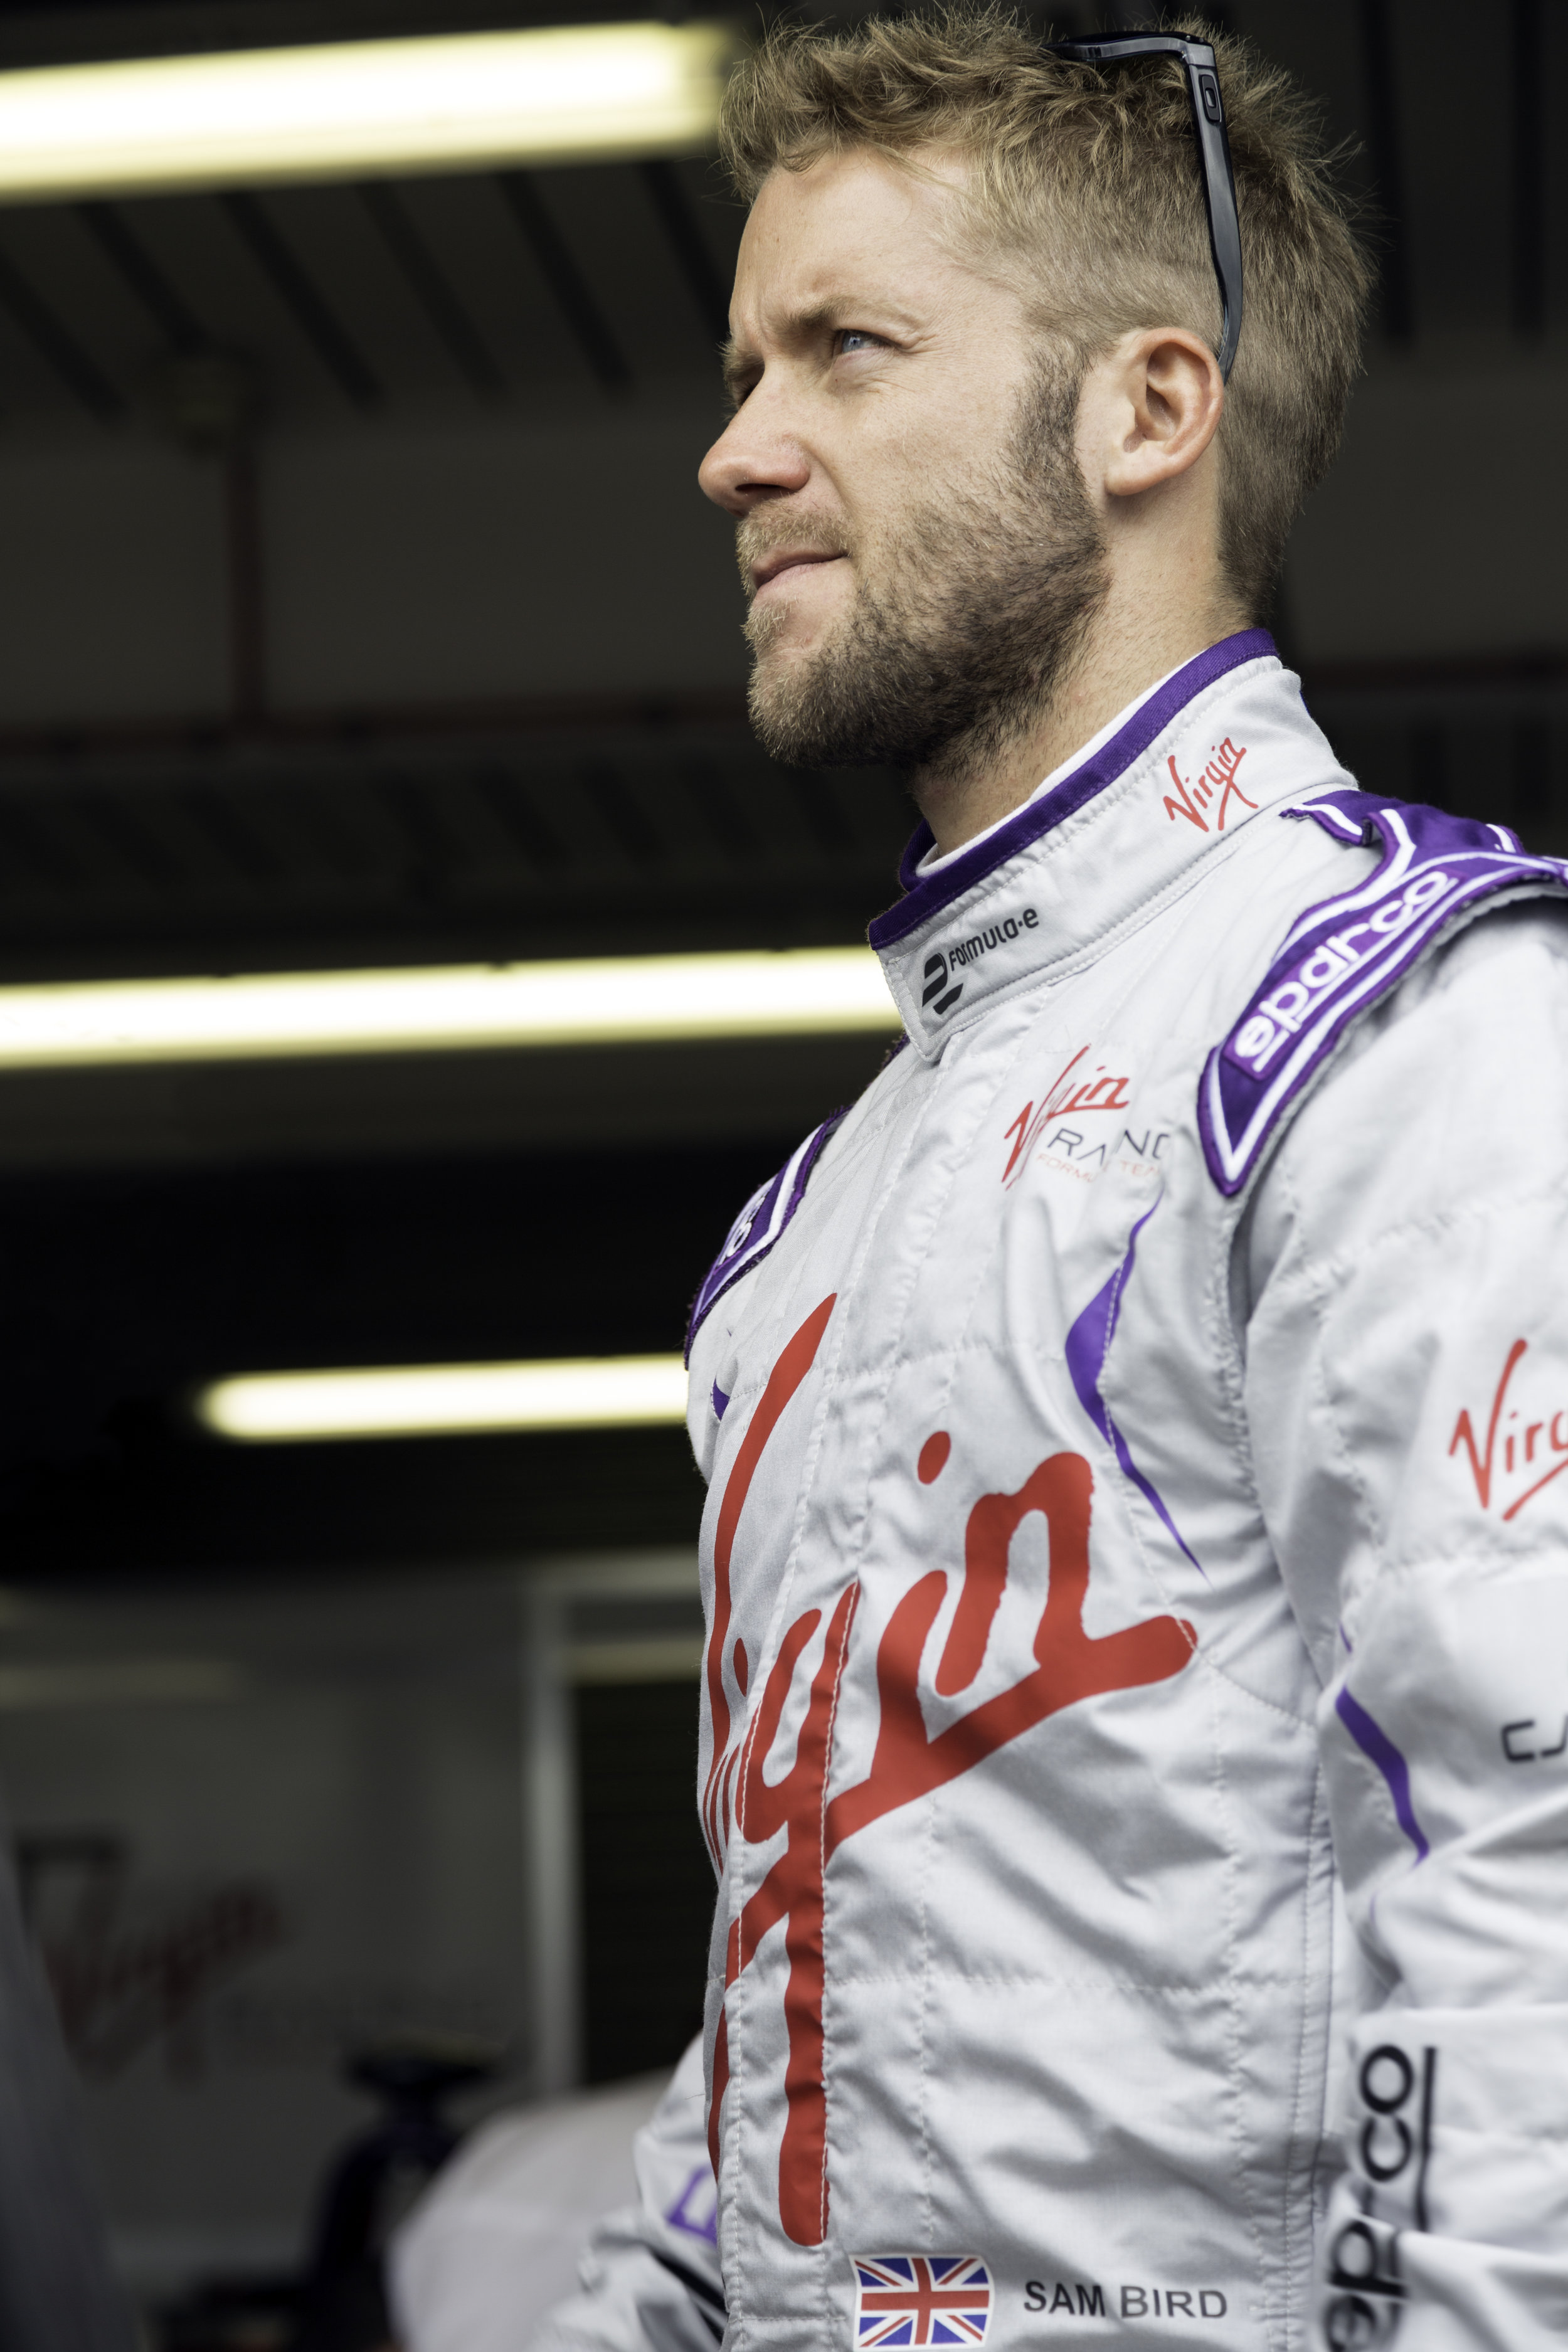 Sam Bird - Formula-e Racing Driver